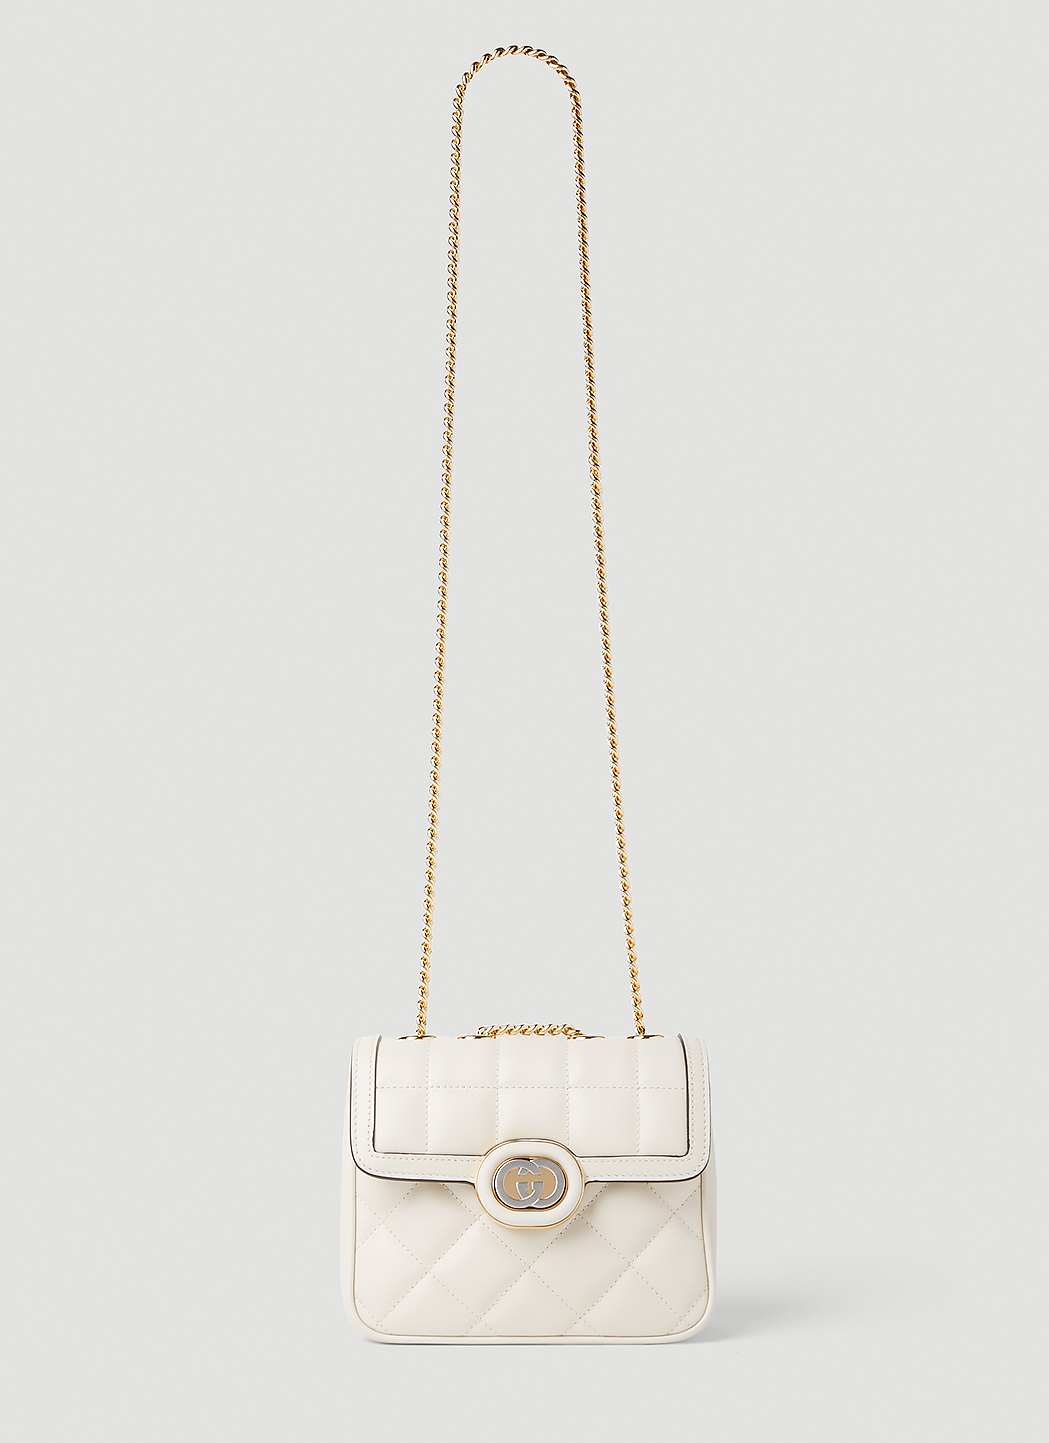 Gucci Black Gg Marmont Small Bag, $2,900, farfetch.com